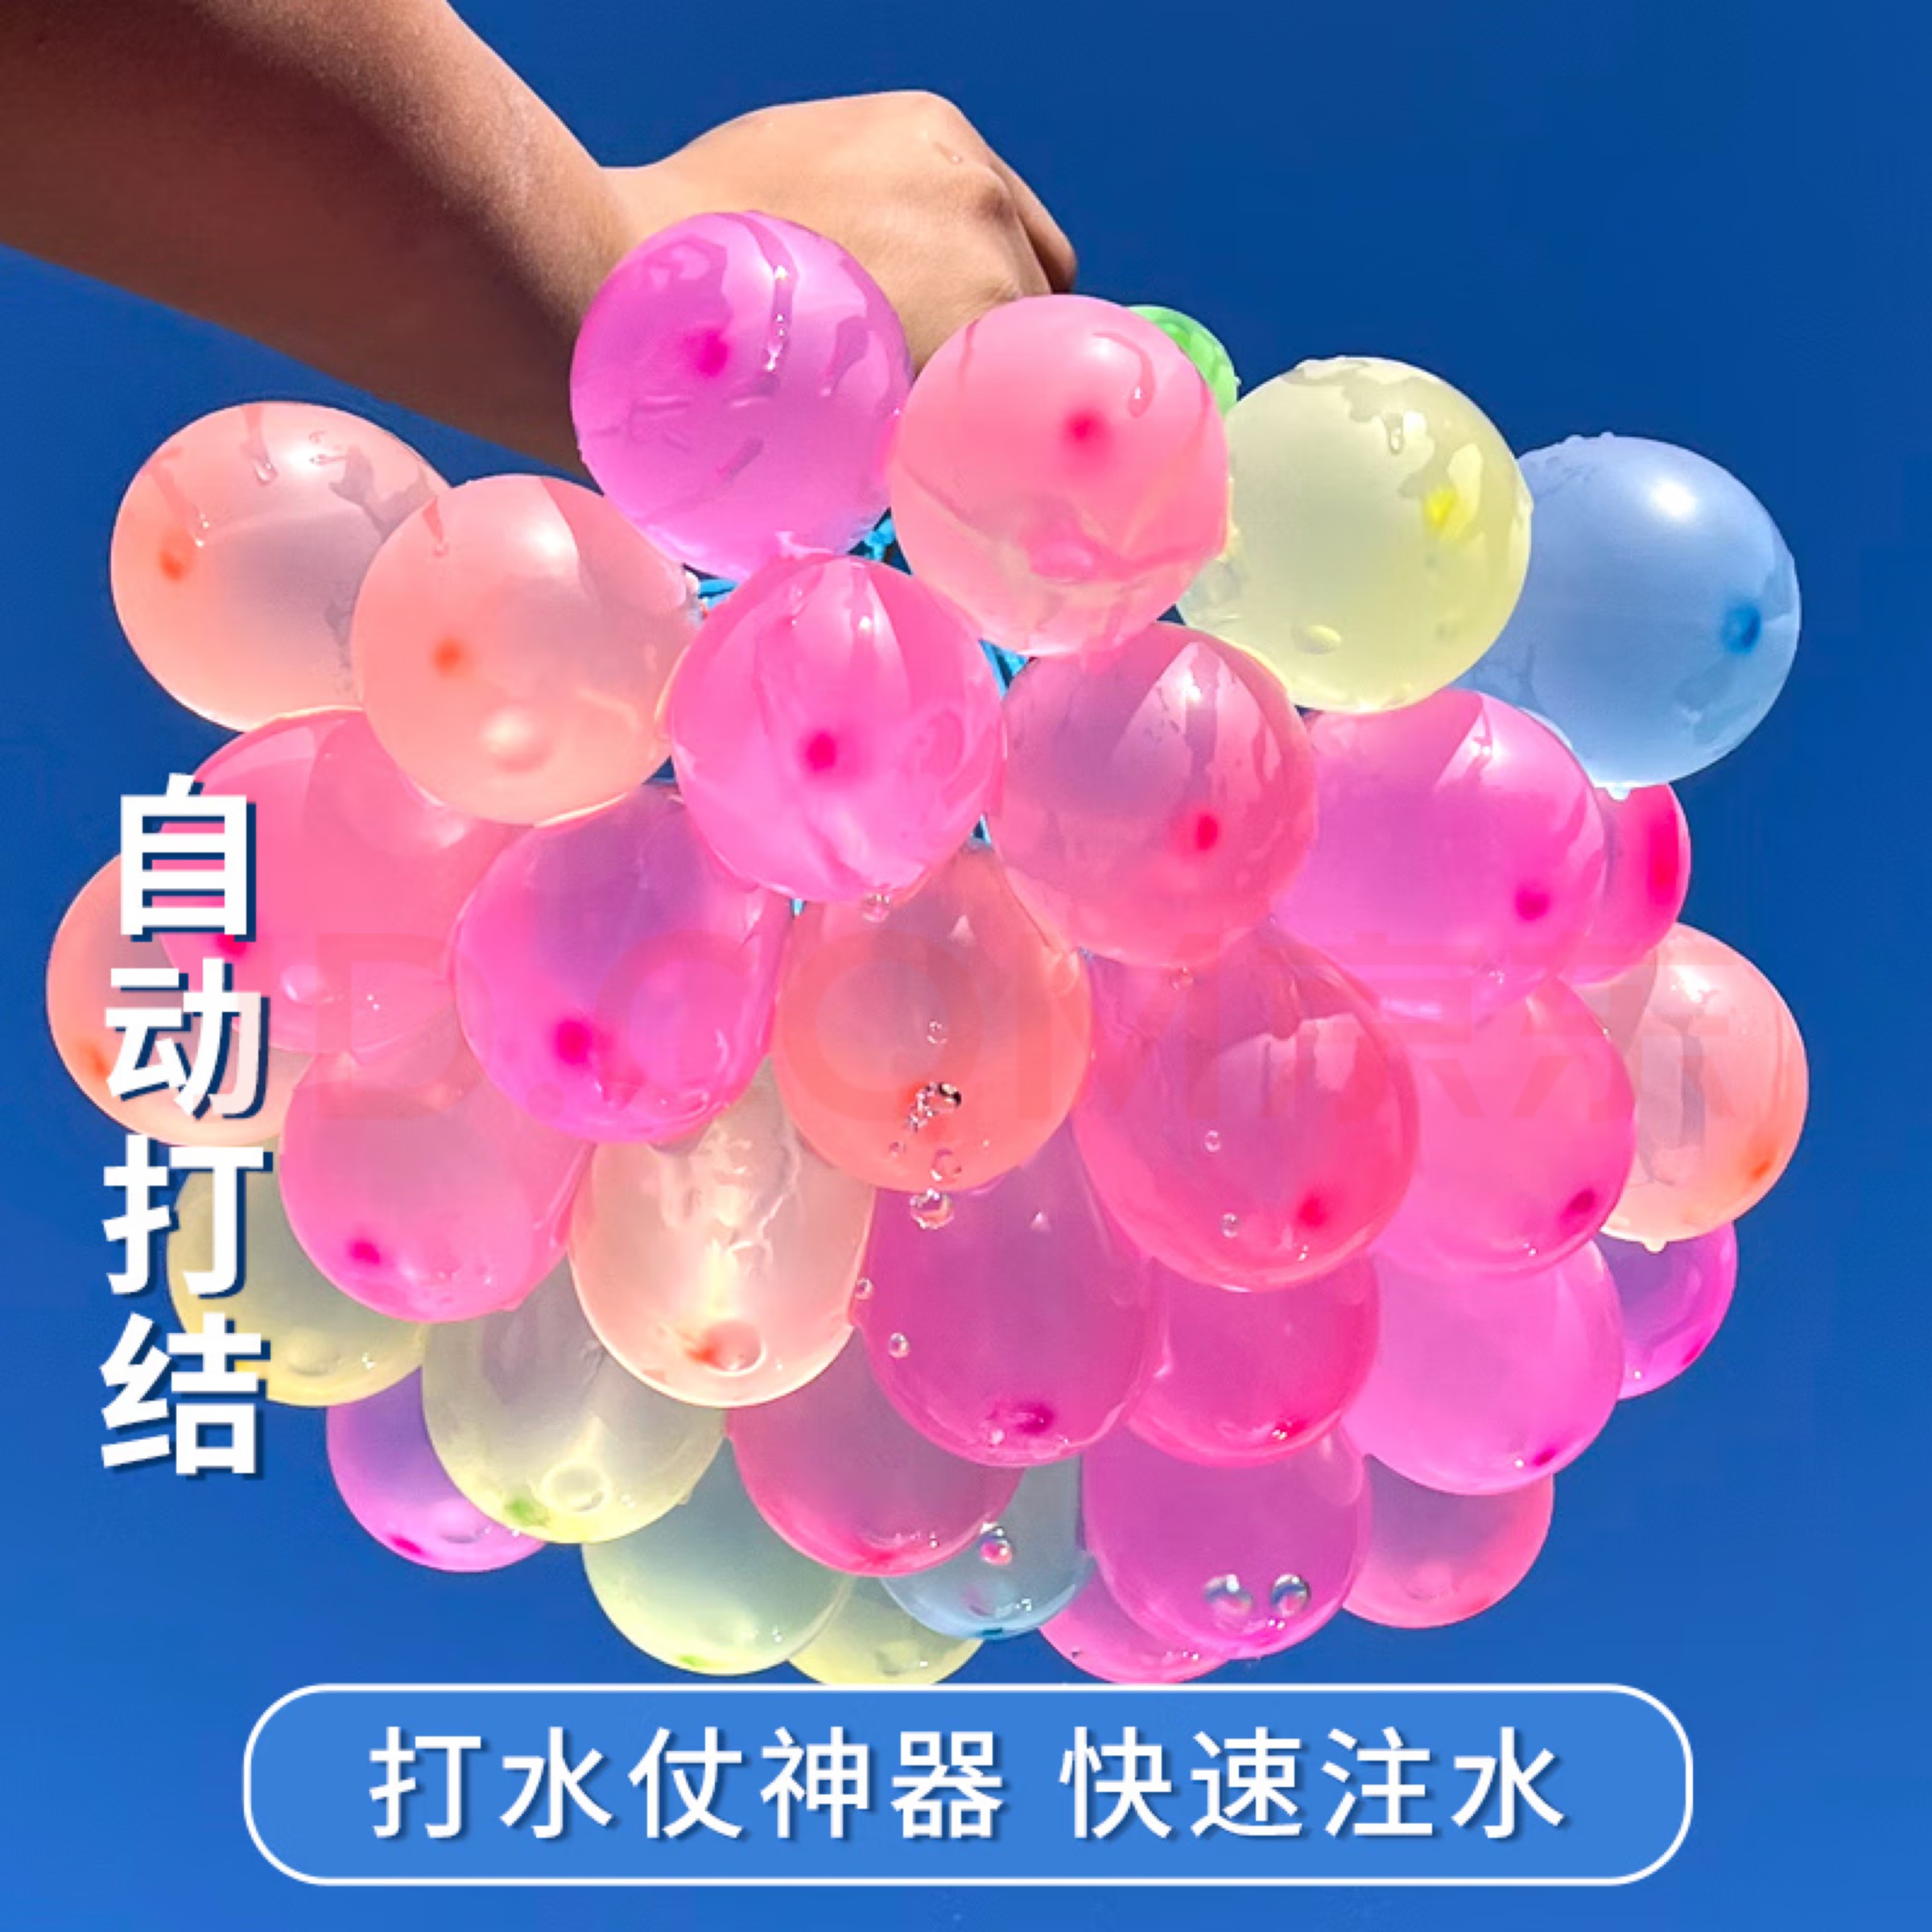 水气球儿童快速灌注自动打结充水汽球夏日户外打水仗神器无毒水弹